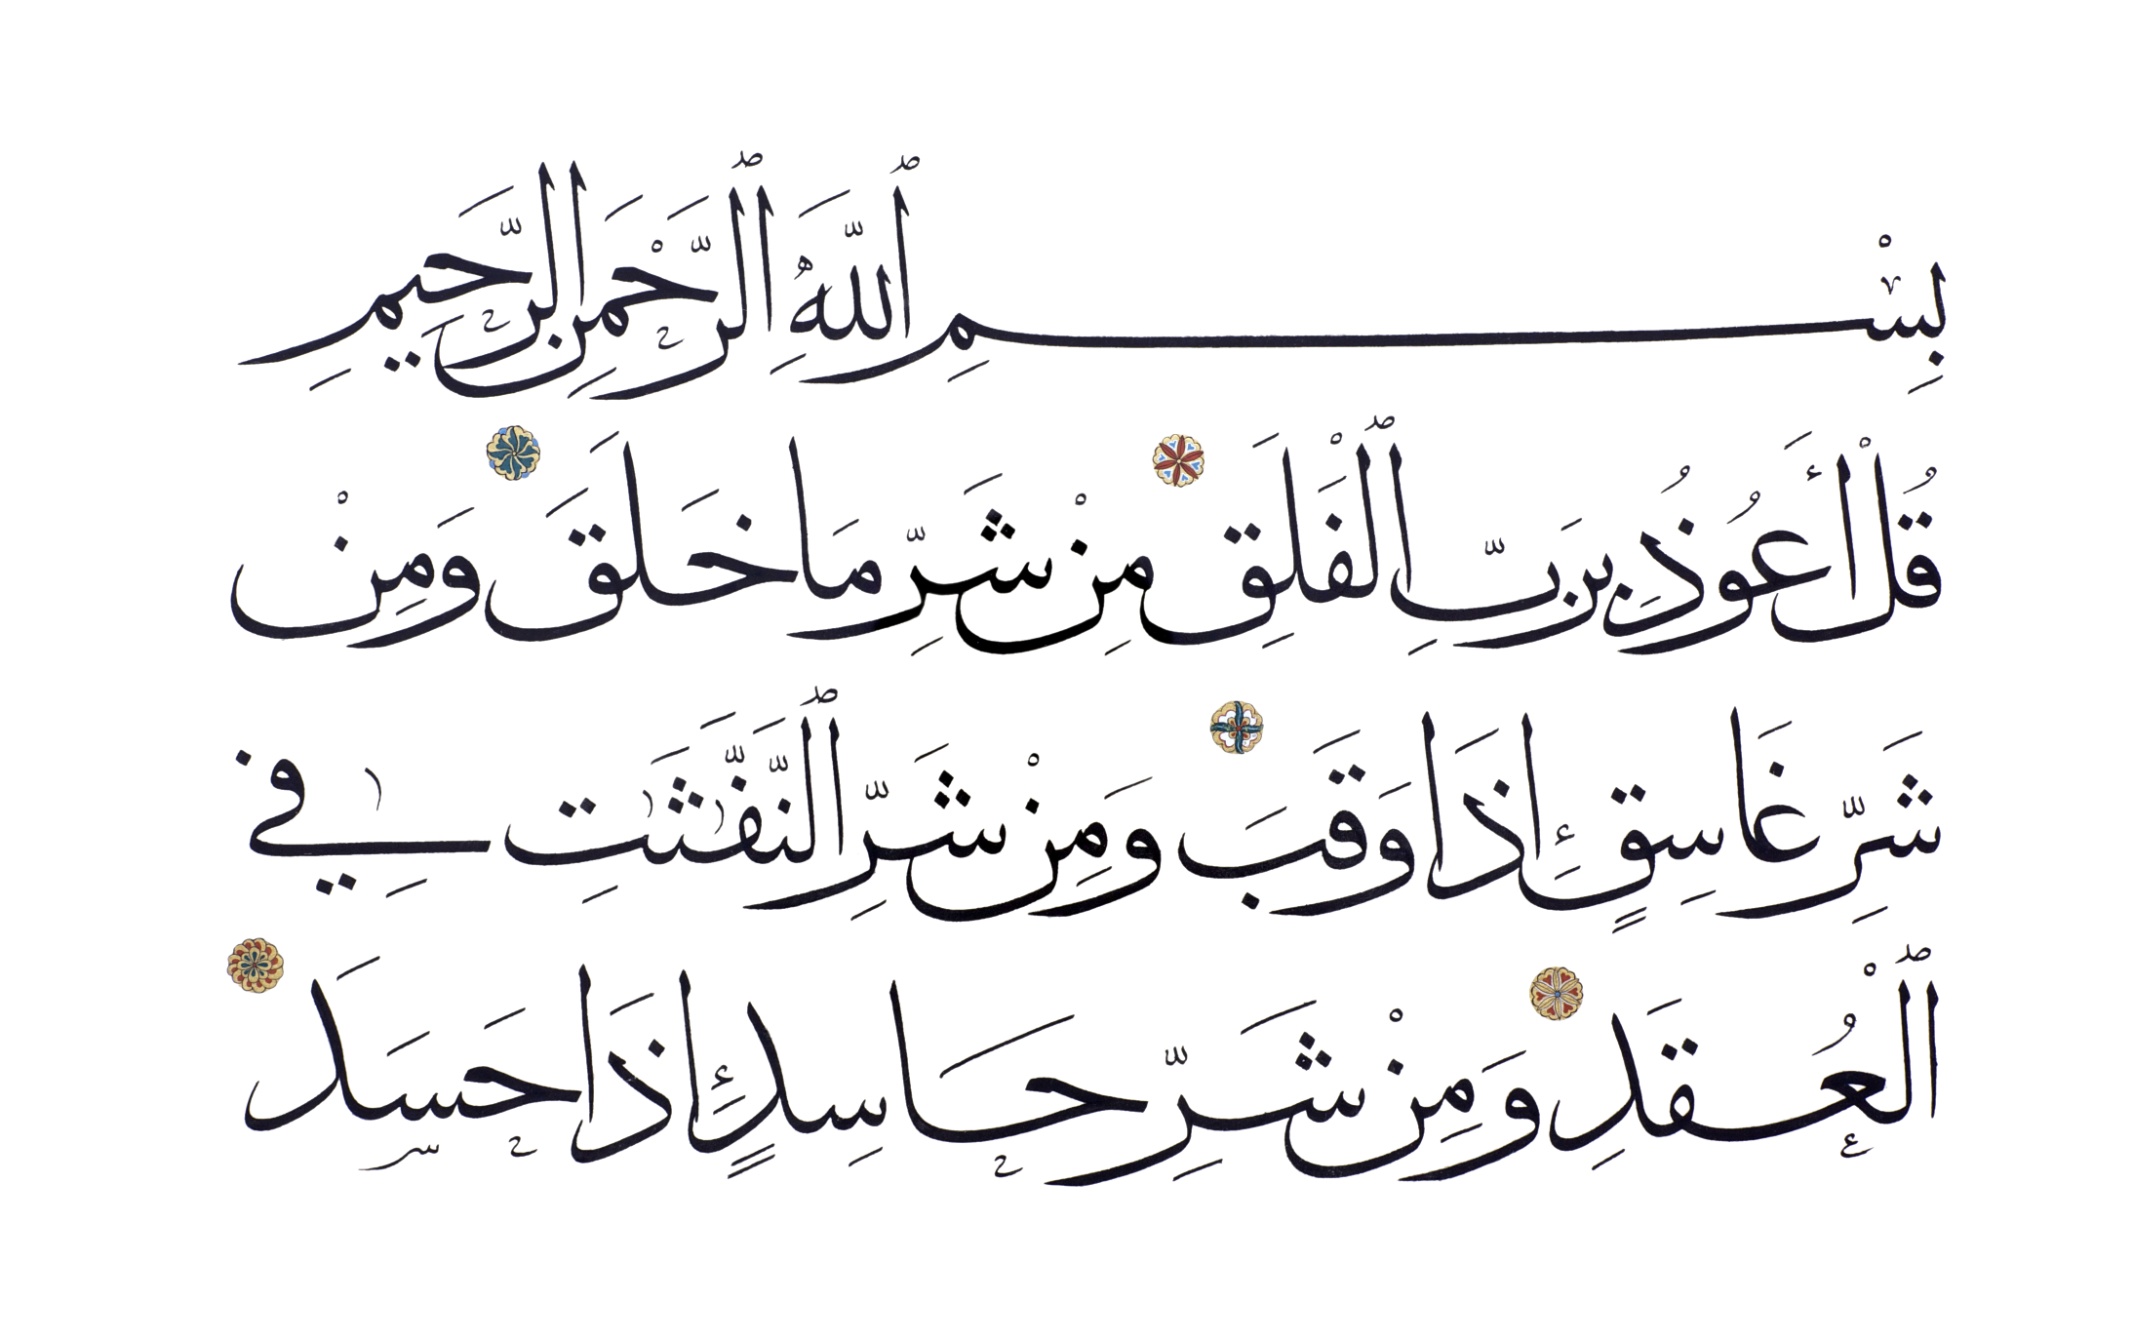 Фатиха ихлас фаляк сура слушать. Сура Аль Фатиха каллиграфия. Сура Аль Ихлас каллиграфия. Сура Аль Фатиха на арабском. Суры на арабском.